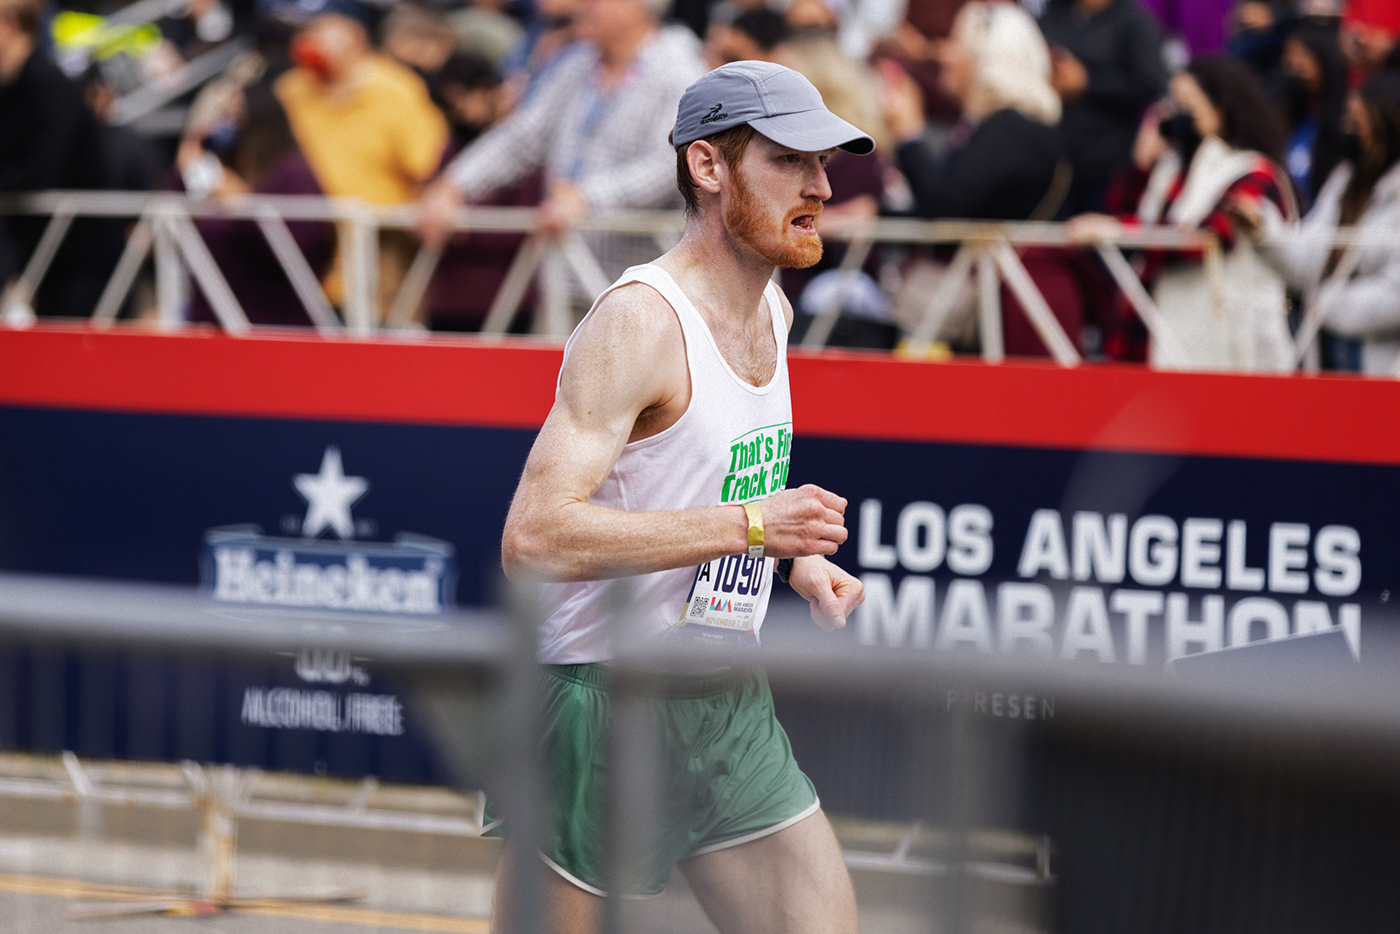 athlete la marathon Los Angeles Marathon race running